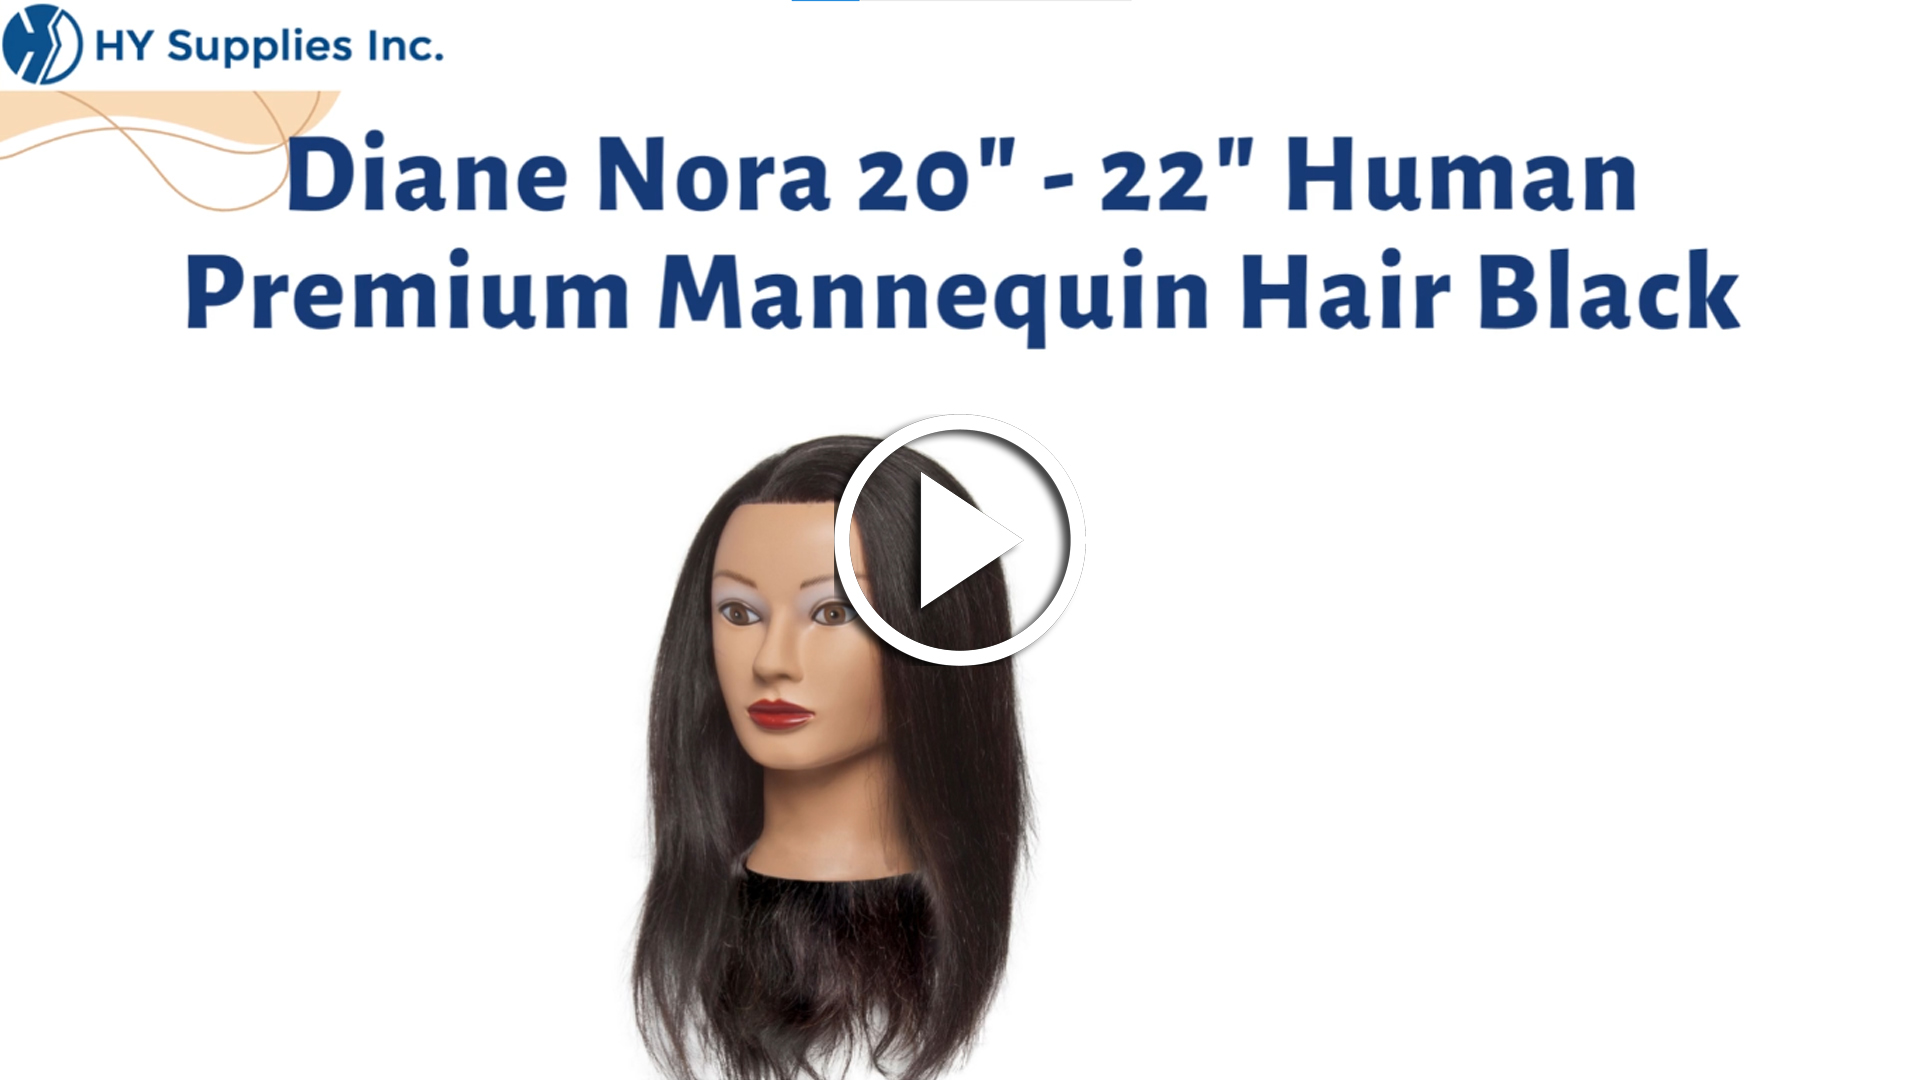 Diane Nora 20" - 22" Human Premium Mannequin Hair Black